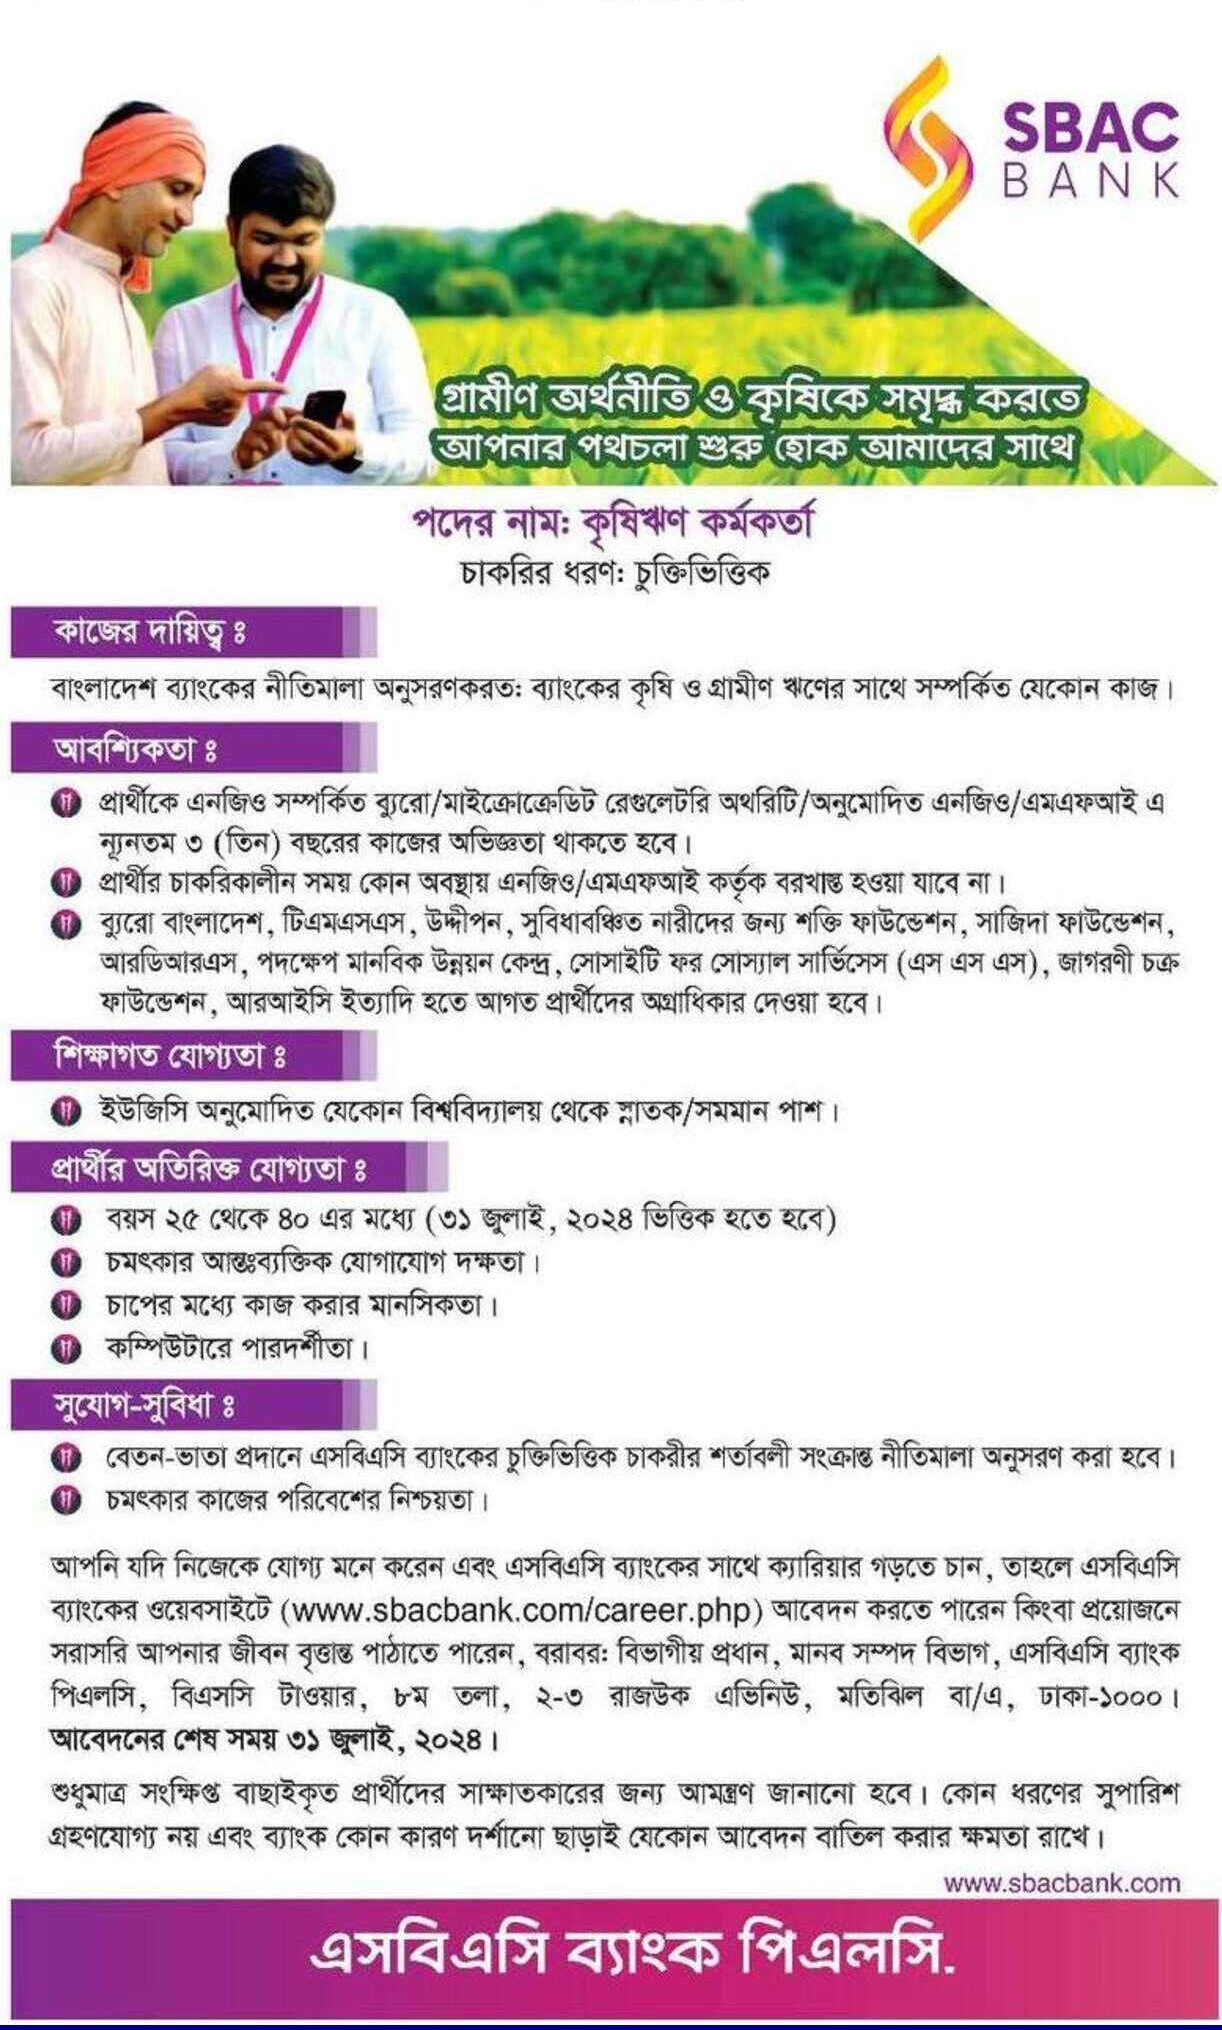 SBAC Bank Job Circular | South Bangla Bank Job Circular